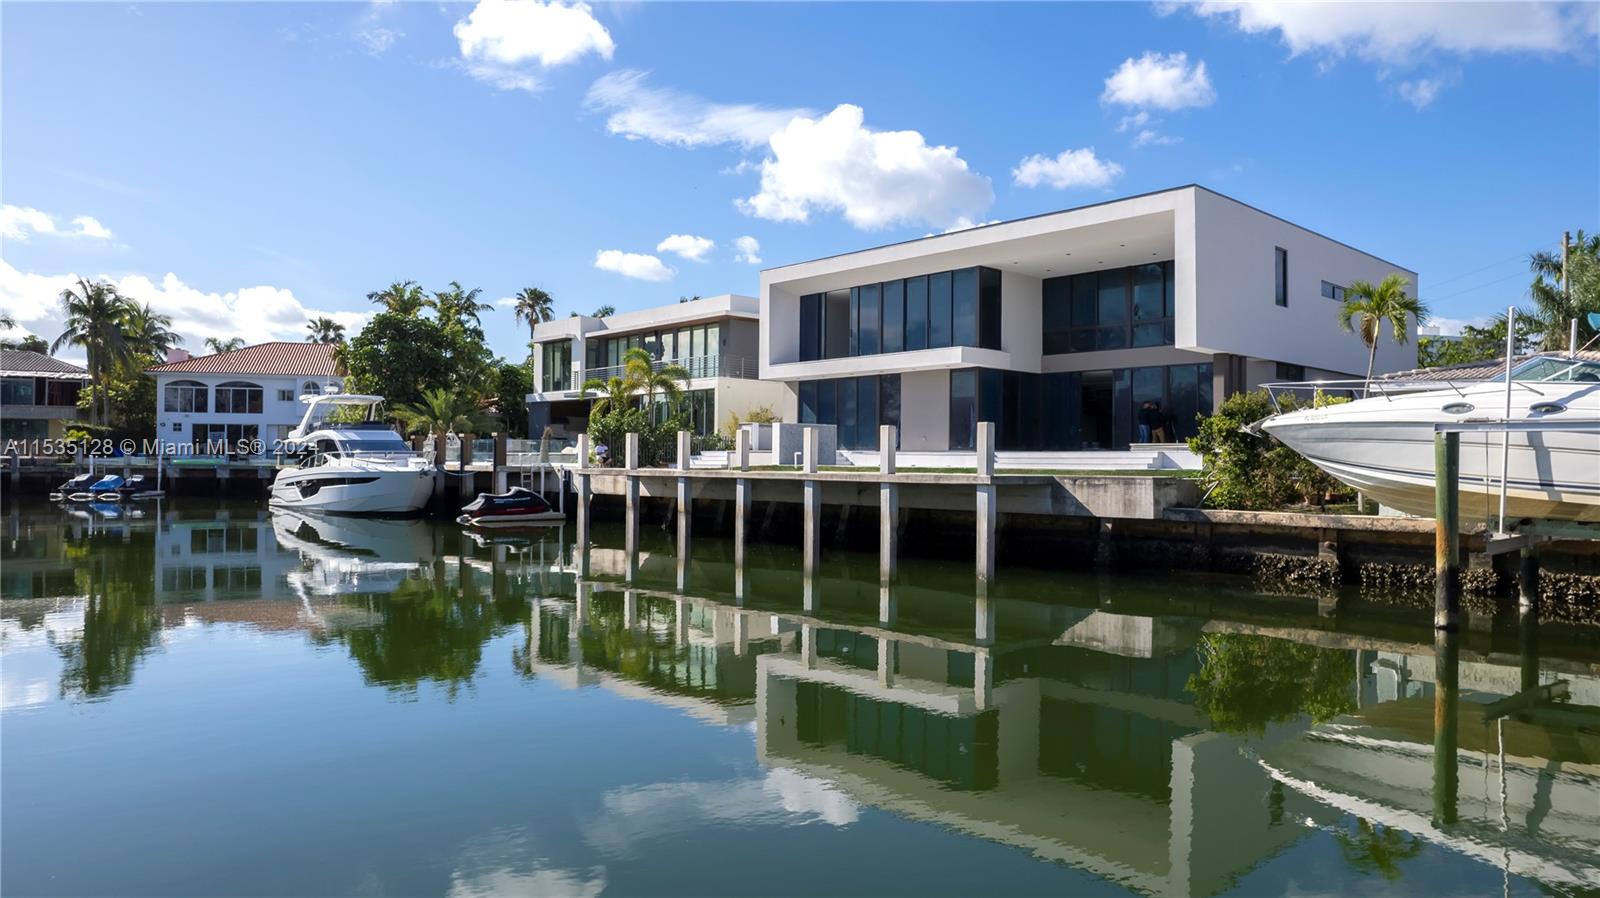 House for Sale in North Miami Beach, FL